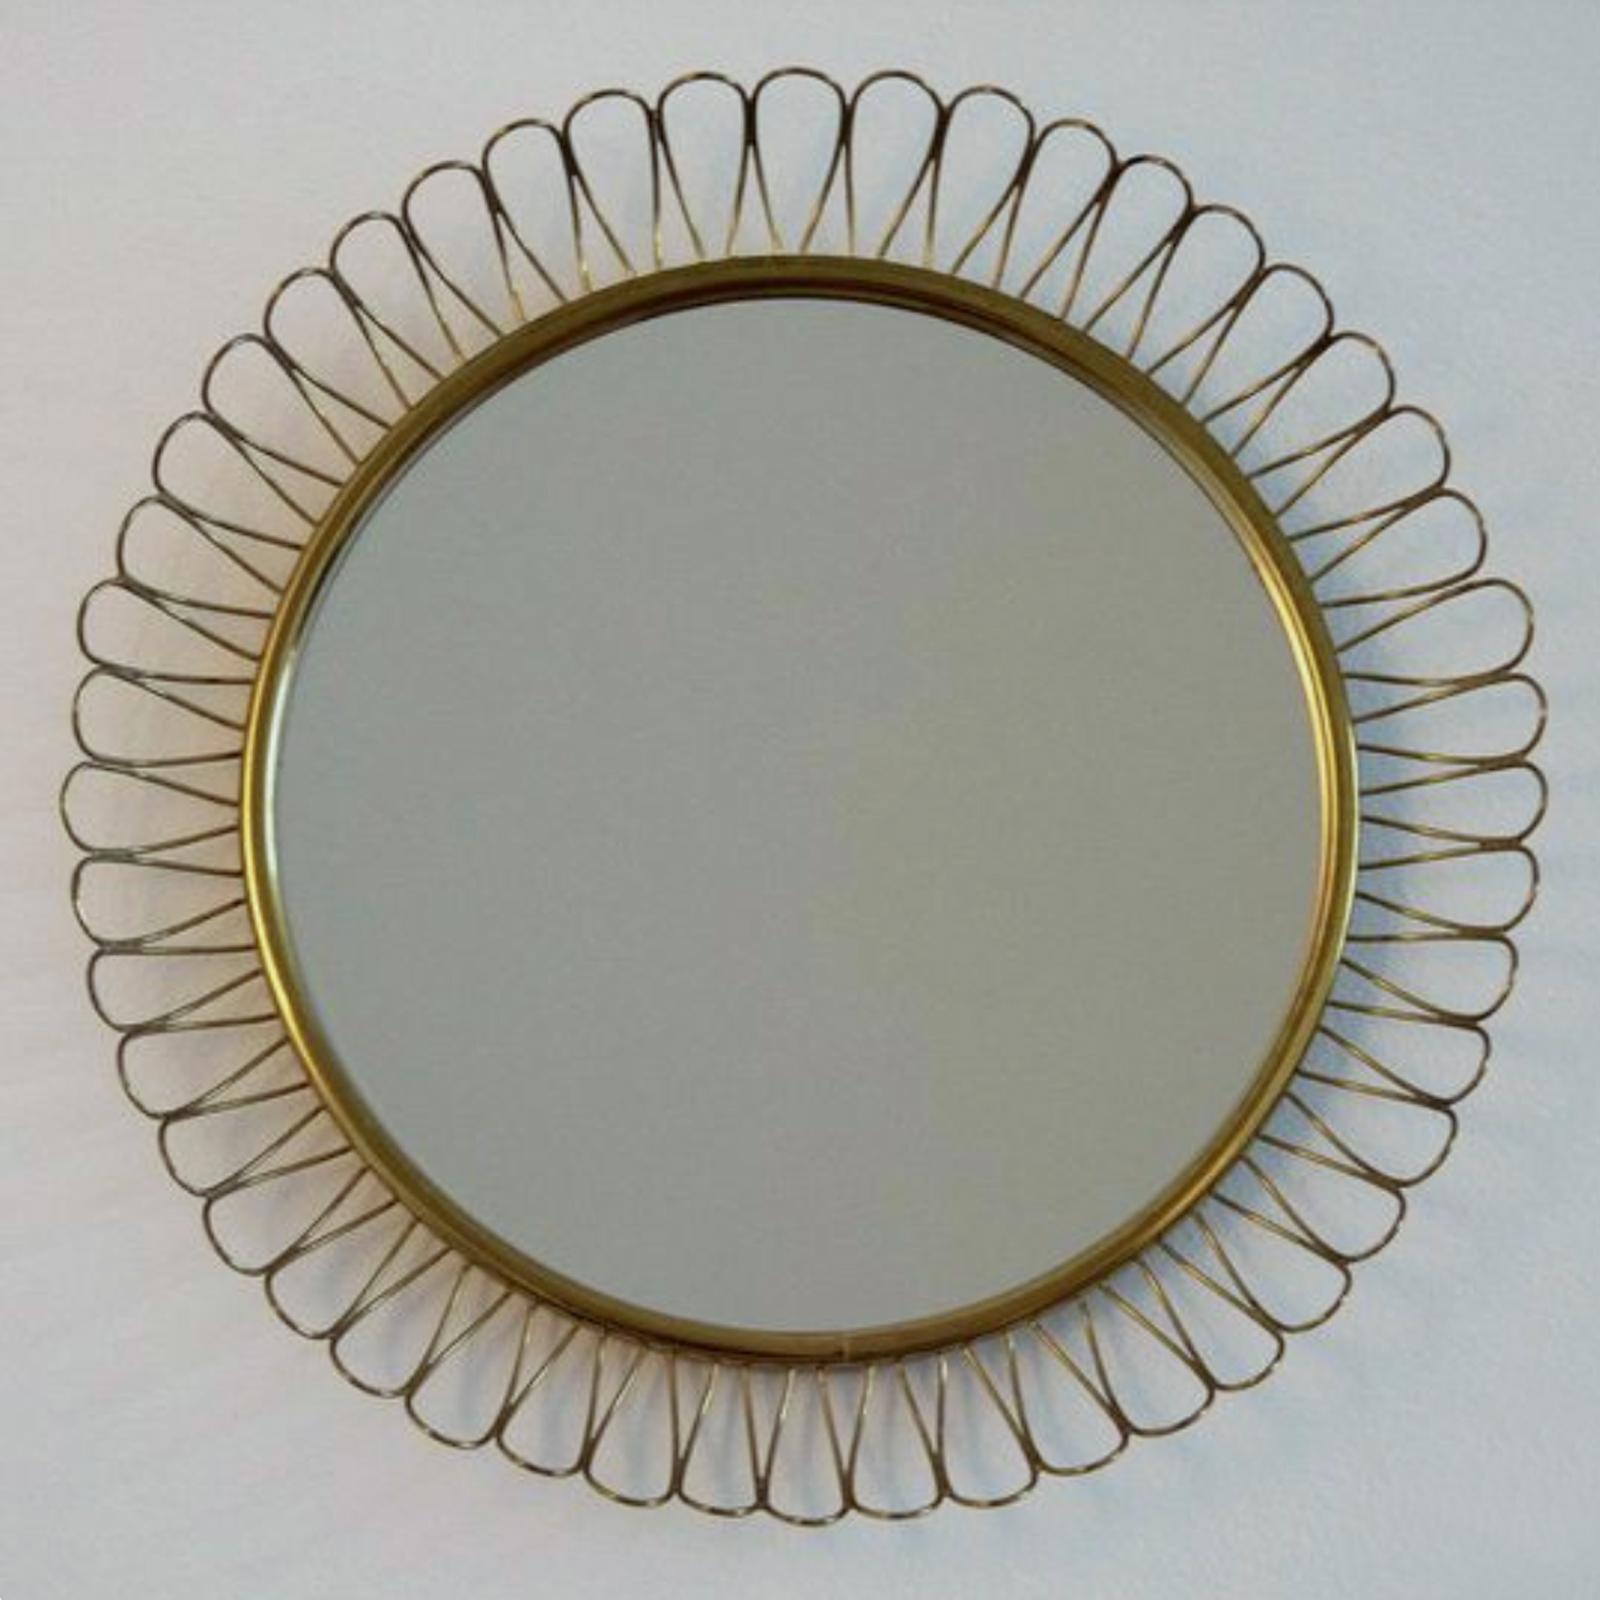 Ce magnifique miroir mural Looping en laiton a été conçu et fabriqué en Suède dans les années 1950. Le cadre en laiton présente une belle patine vintage. Le verre du miroir s'est quelque peu troublé en raison de l'âge. 

Mesures : Diamètre